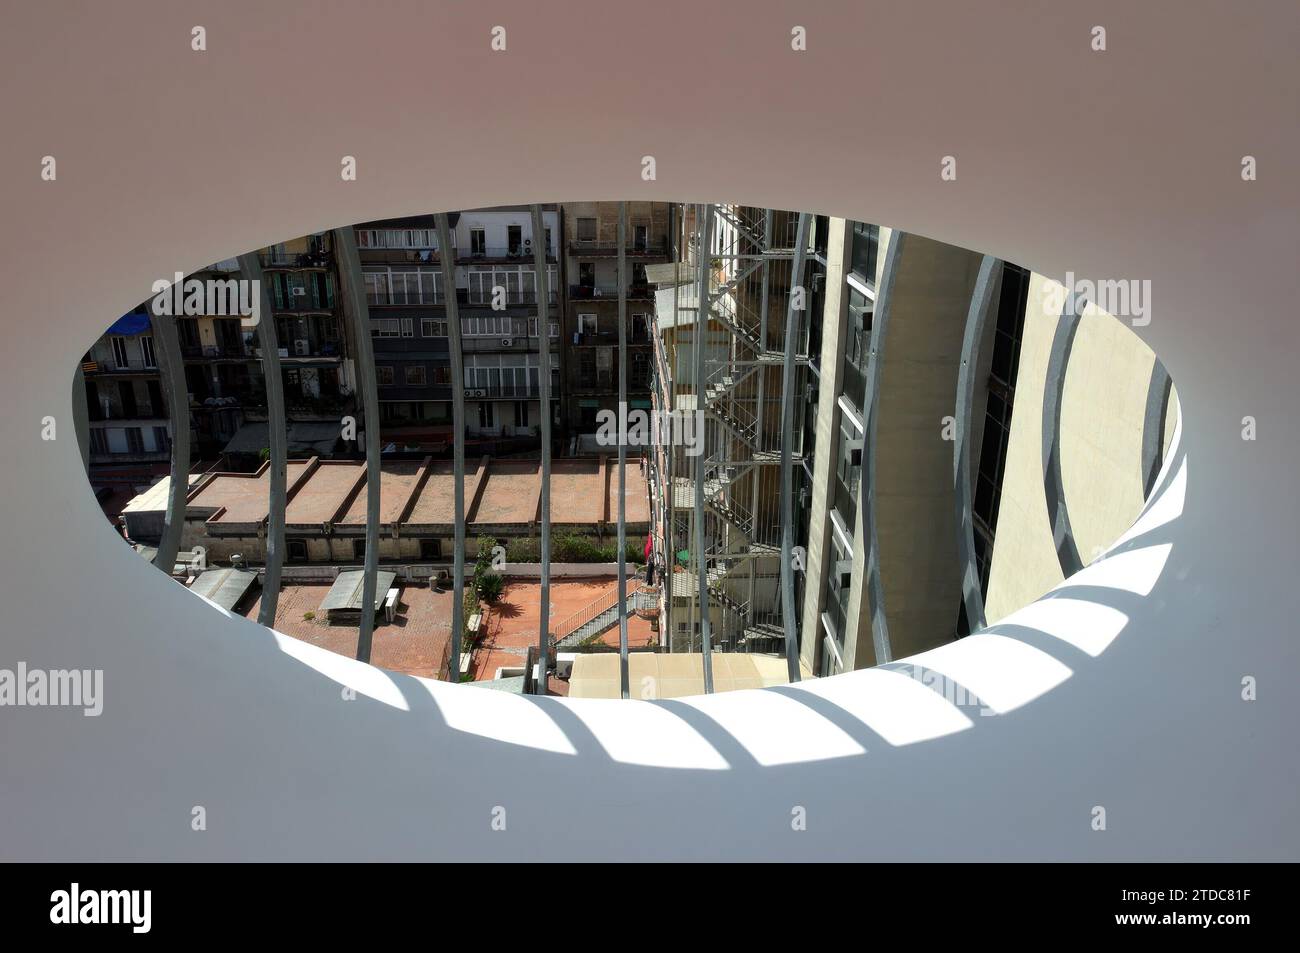 03/23/2004. BARCELONE, 03/24/04.. Casa Batlló, l'un des chefs-d'œuvre du modernisme et peut-être le joyau architectural qui résume le mieux la splendeur, la fantaisie et le génie de l'architecte Antoni Gaudí, un espace qui, avec les greniers, et les patios de lumières, seront ouverts au public, pour la première fois, pour célébrer le centenaire du bâtiment emblématique sur le Paseo de Gracia....PHOTO YOLANDA CARDO....ARCHDC....IMAGE NUMÉRIQUE. Crédit : Album / Archivo ABC / Yolanda Cardo Banque D'Images